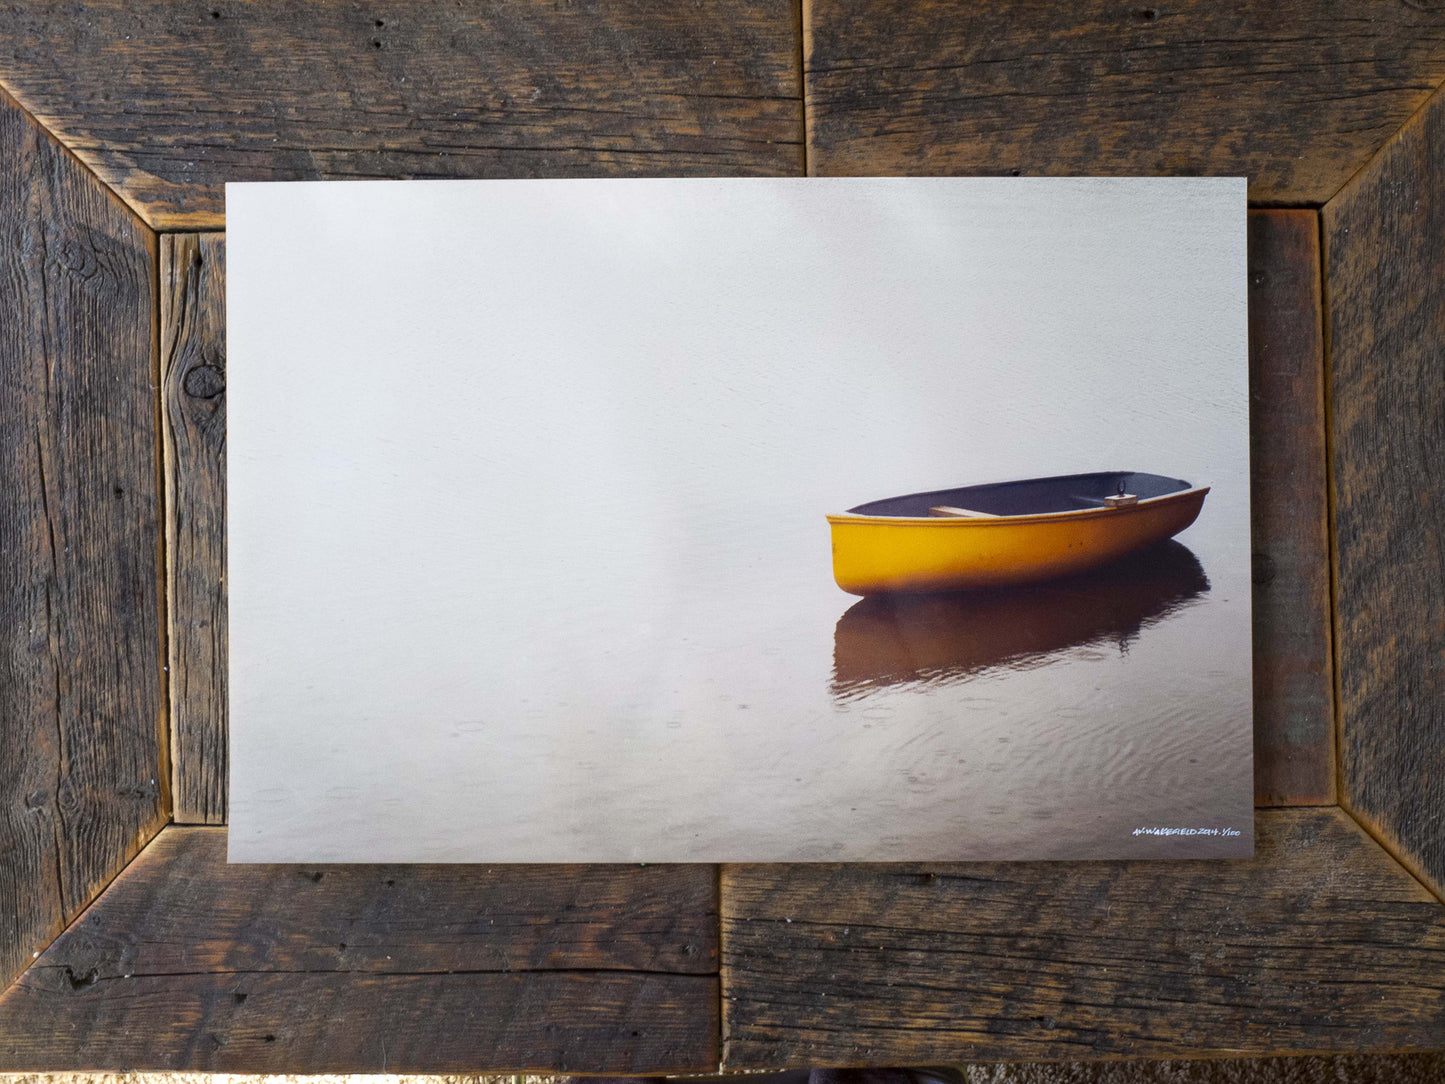 Bote de remos bajo la lluvia tranquila<br> Hofsos Islandia<br> Impresión cromogénica de bellas artes de archivo de edición limitada